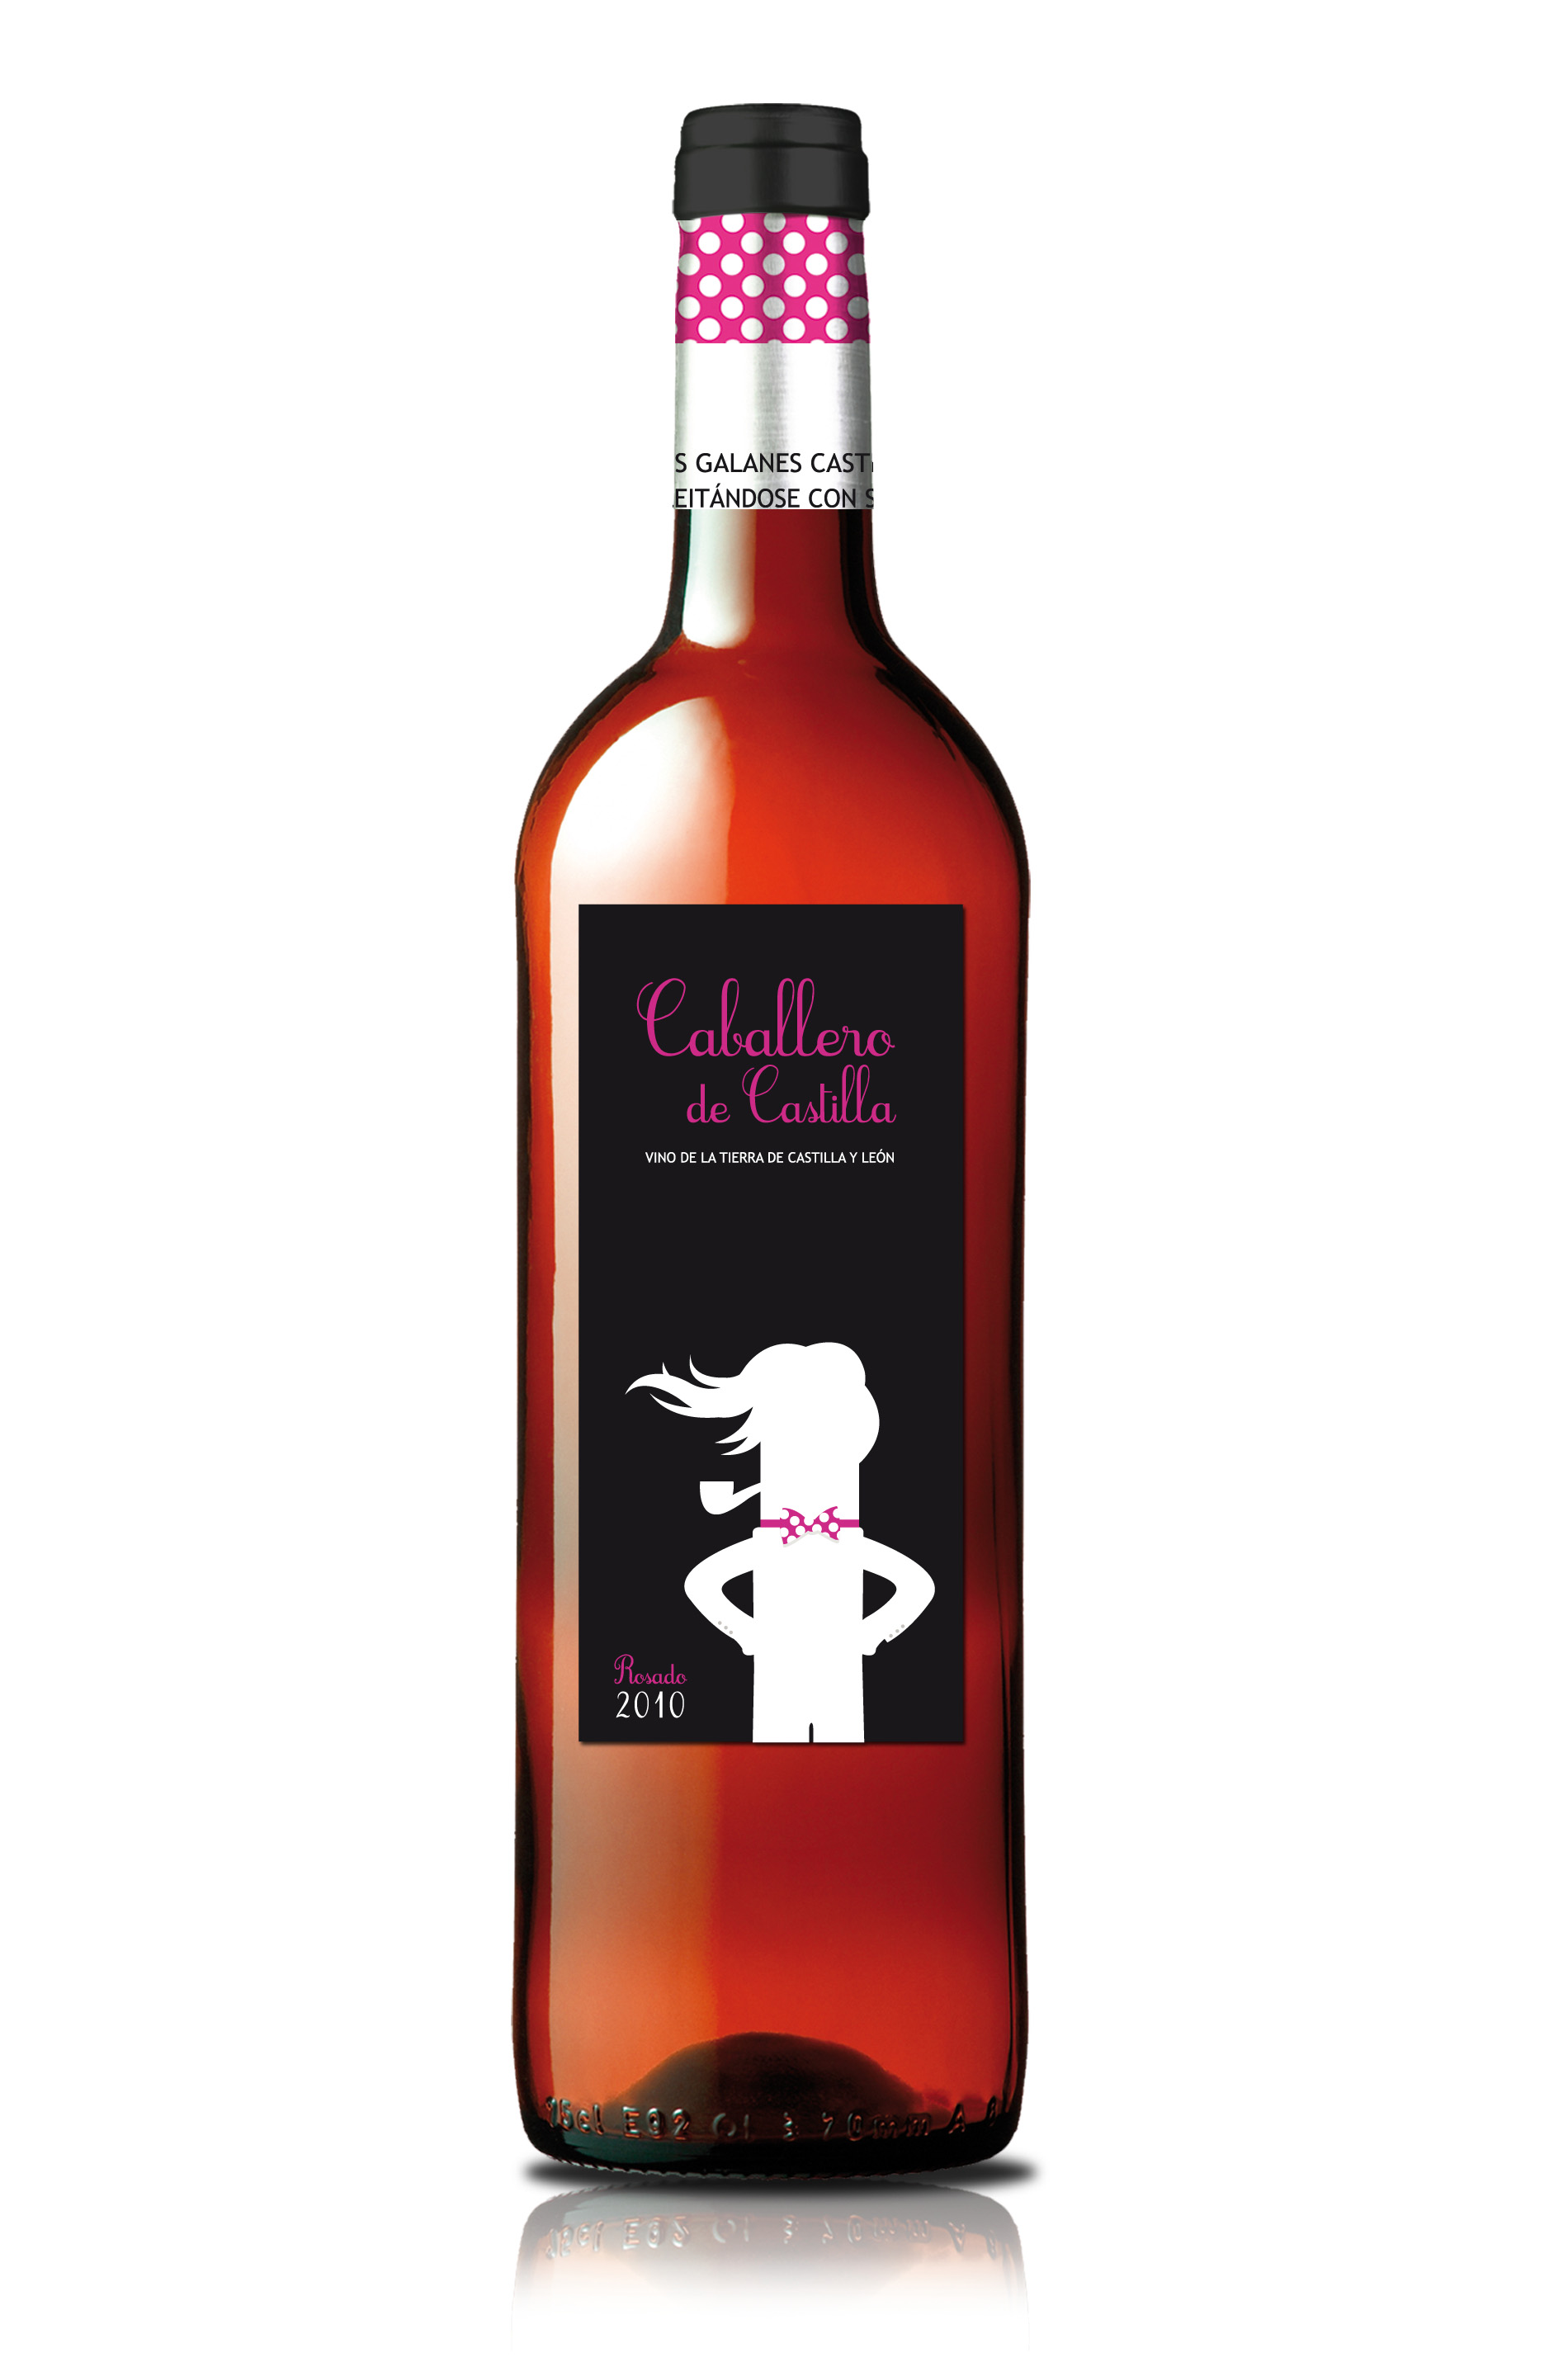 Bild von der Weinflasche Caballero de Castilla Rosado